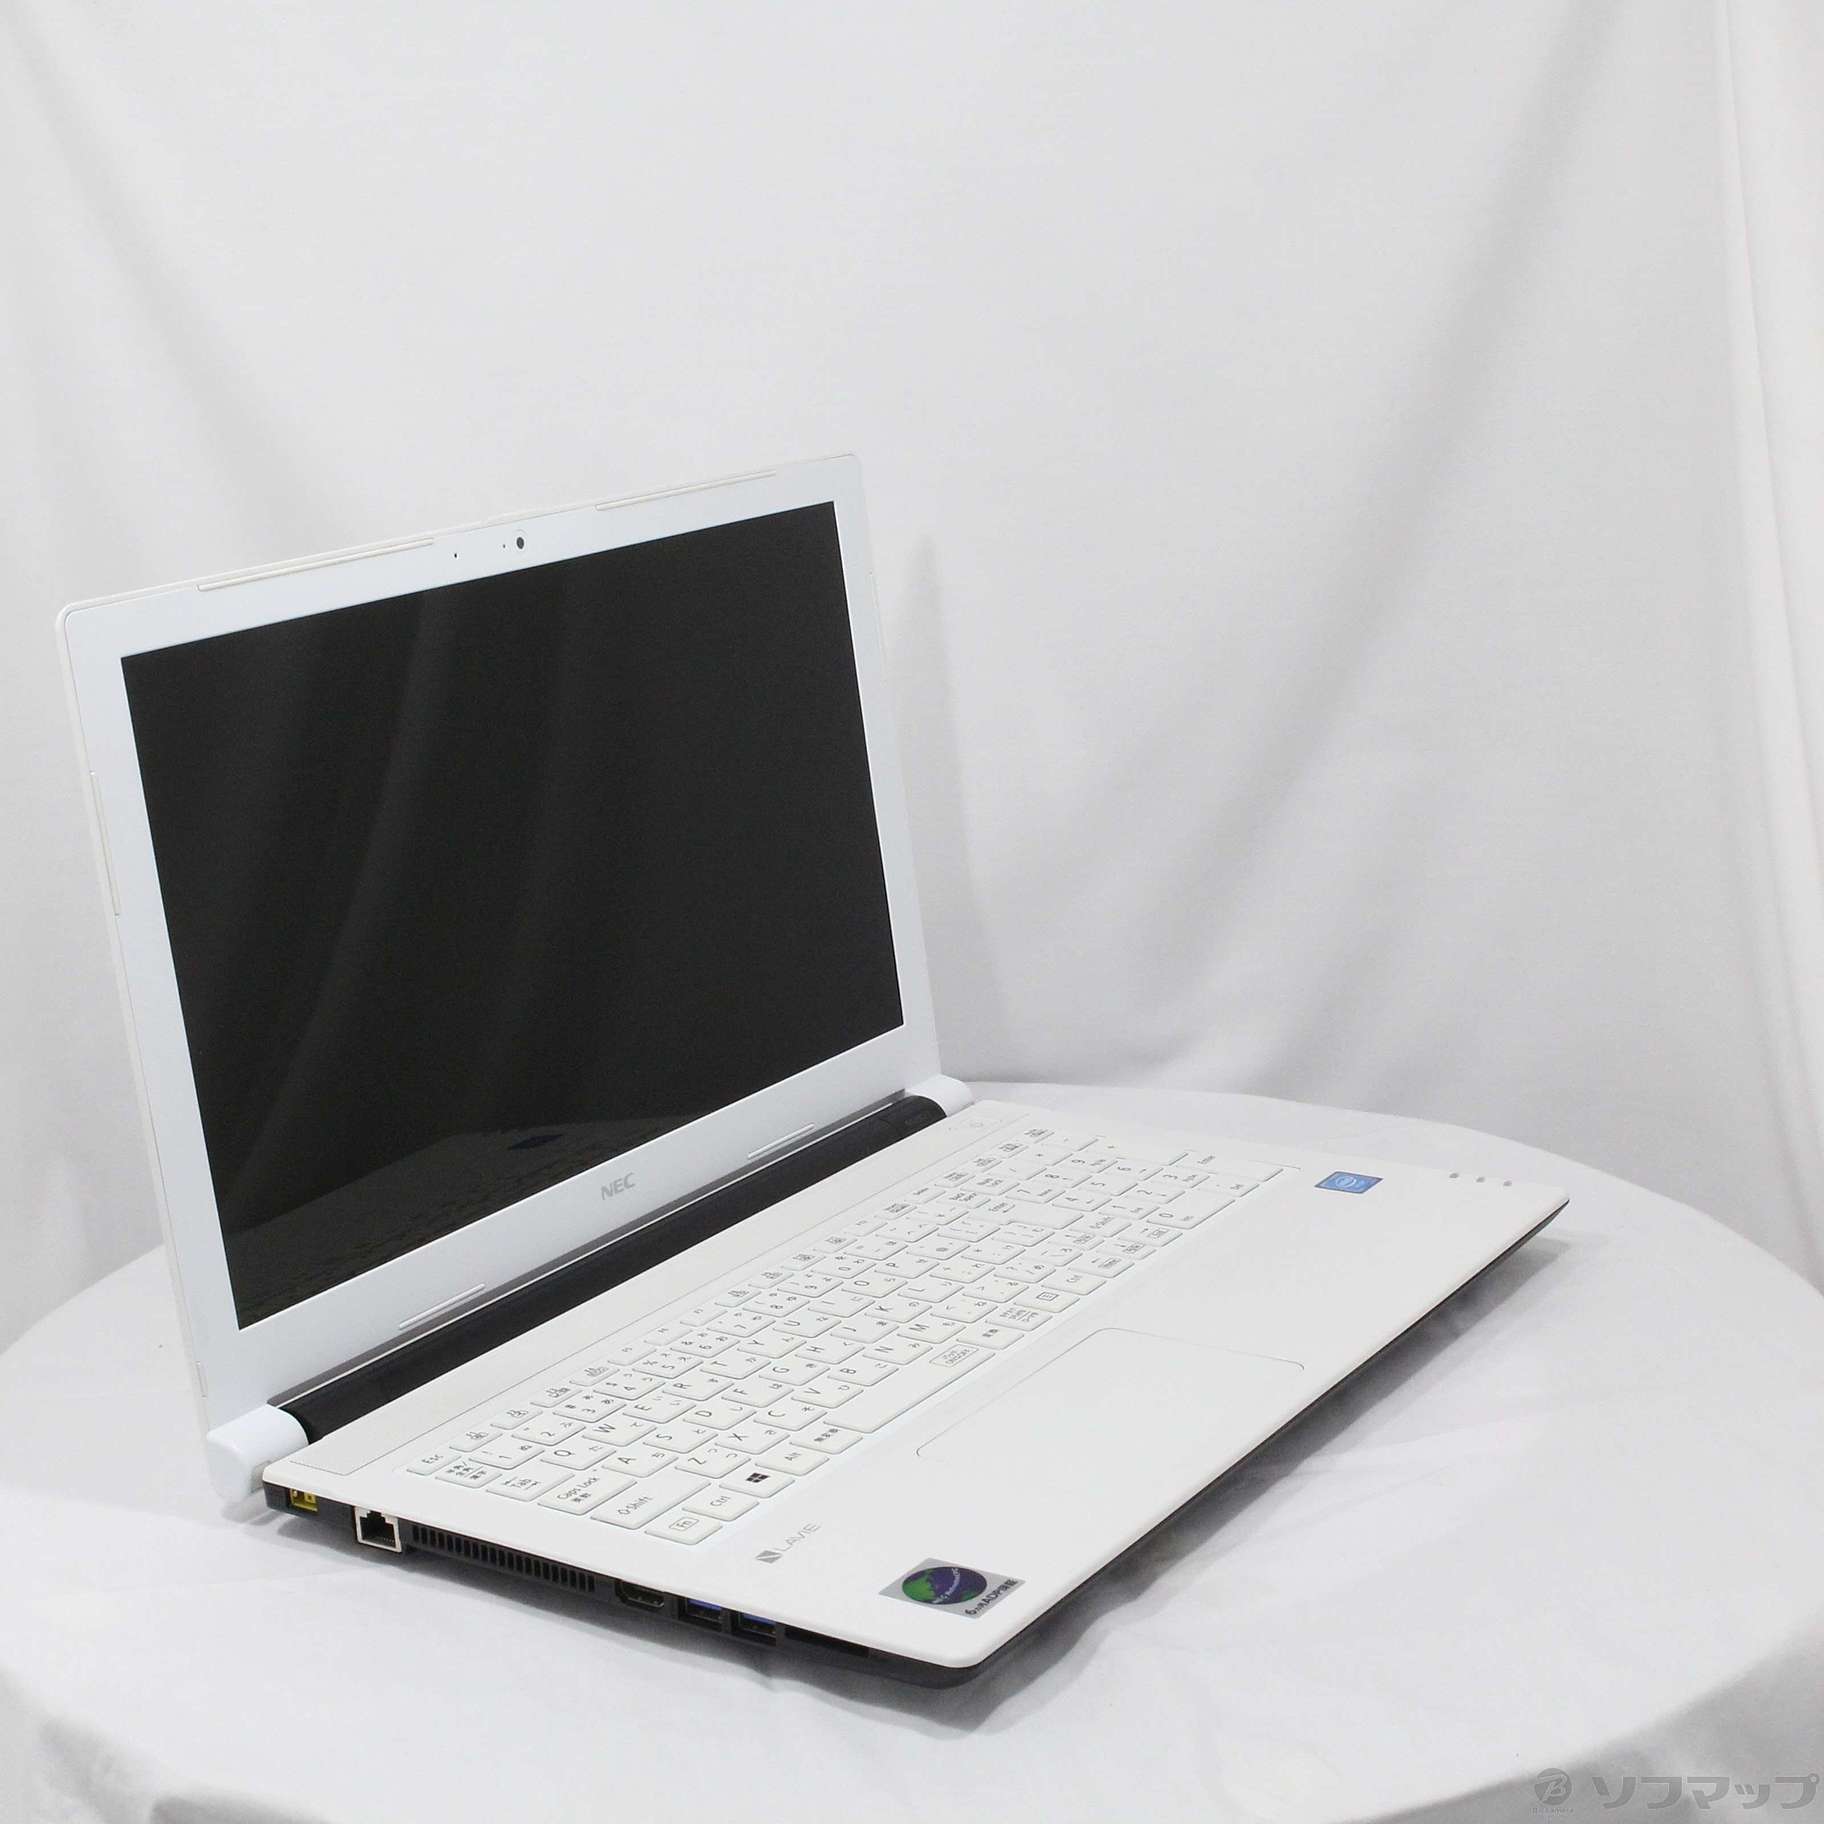 中古】セール対象品 LaVie Note Standard PC-NS100F2W-H4 ホワイト 